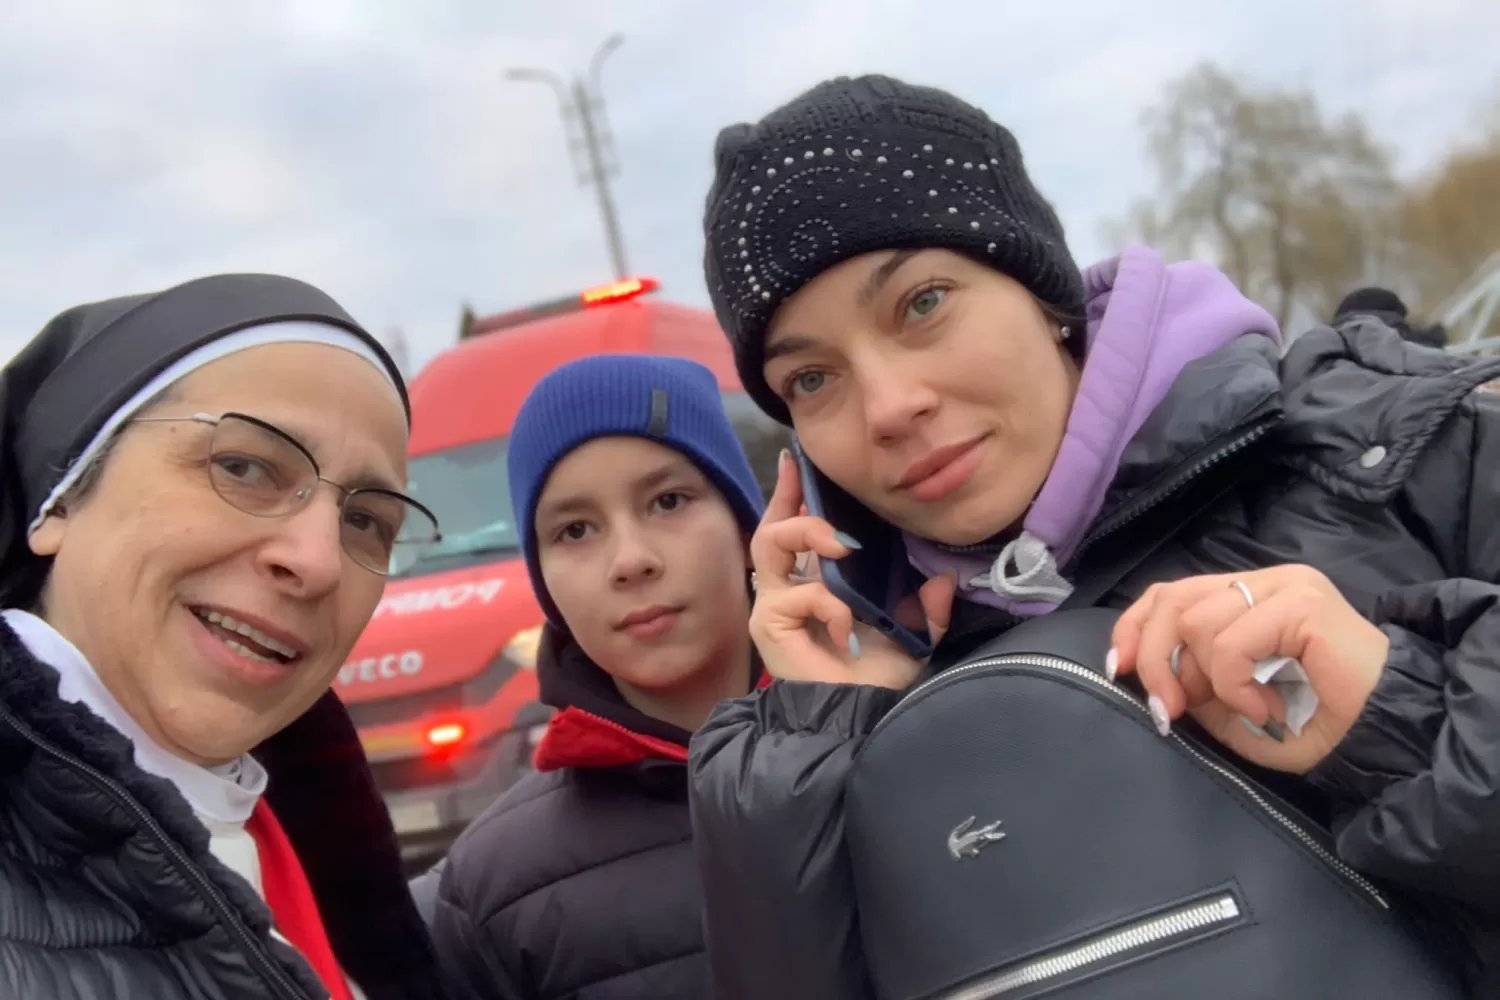 GESTO SOLIDARIO. Sor Lucía Caram, junto a dos de las personas que ayudó en Ucrania. Foto de Twitter